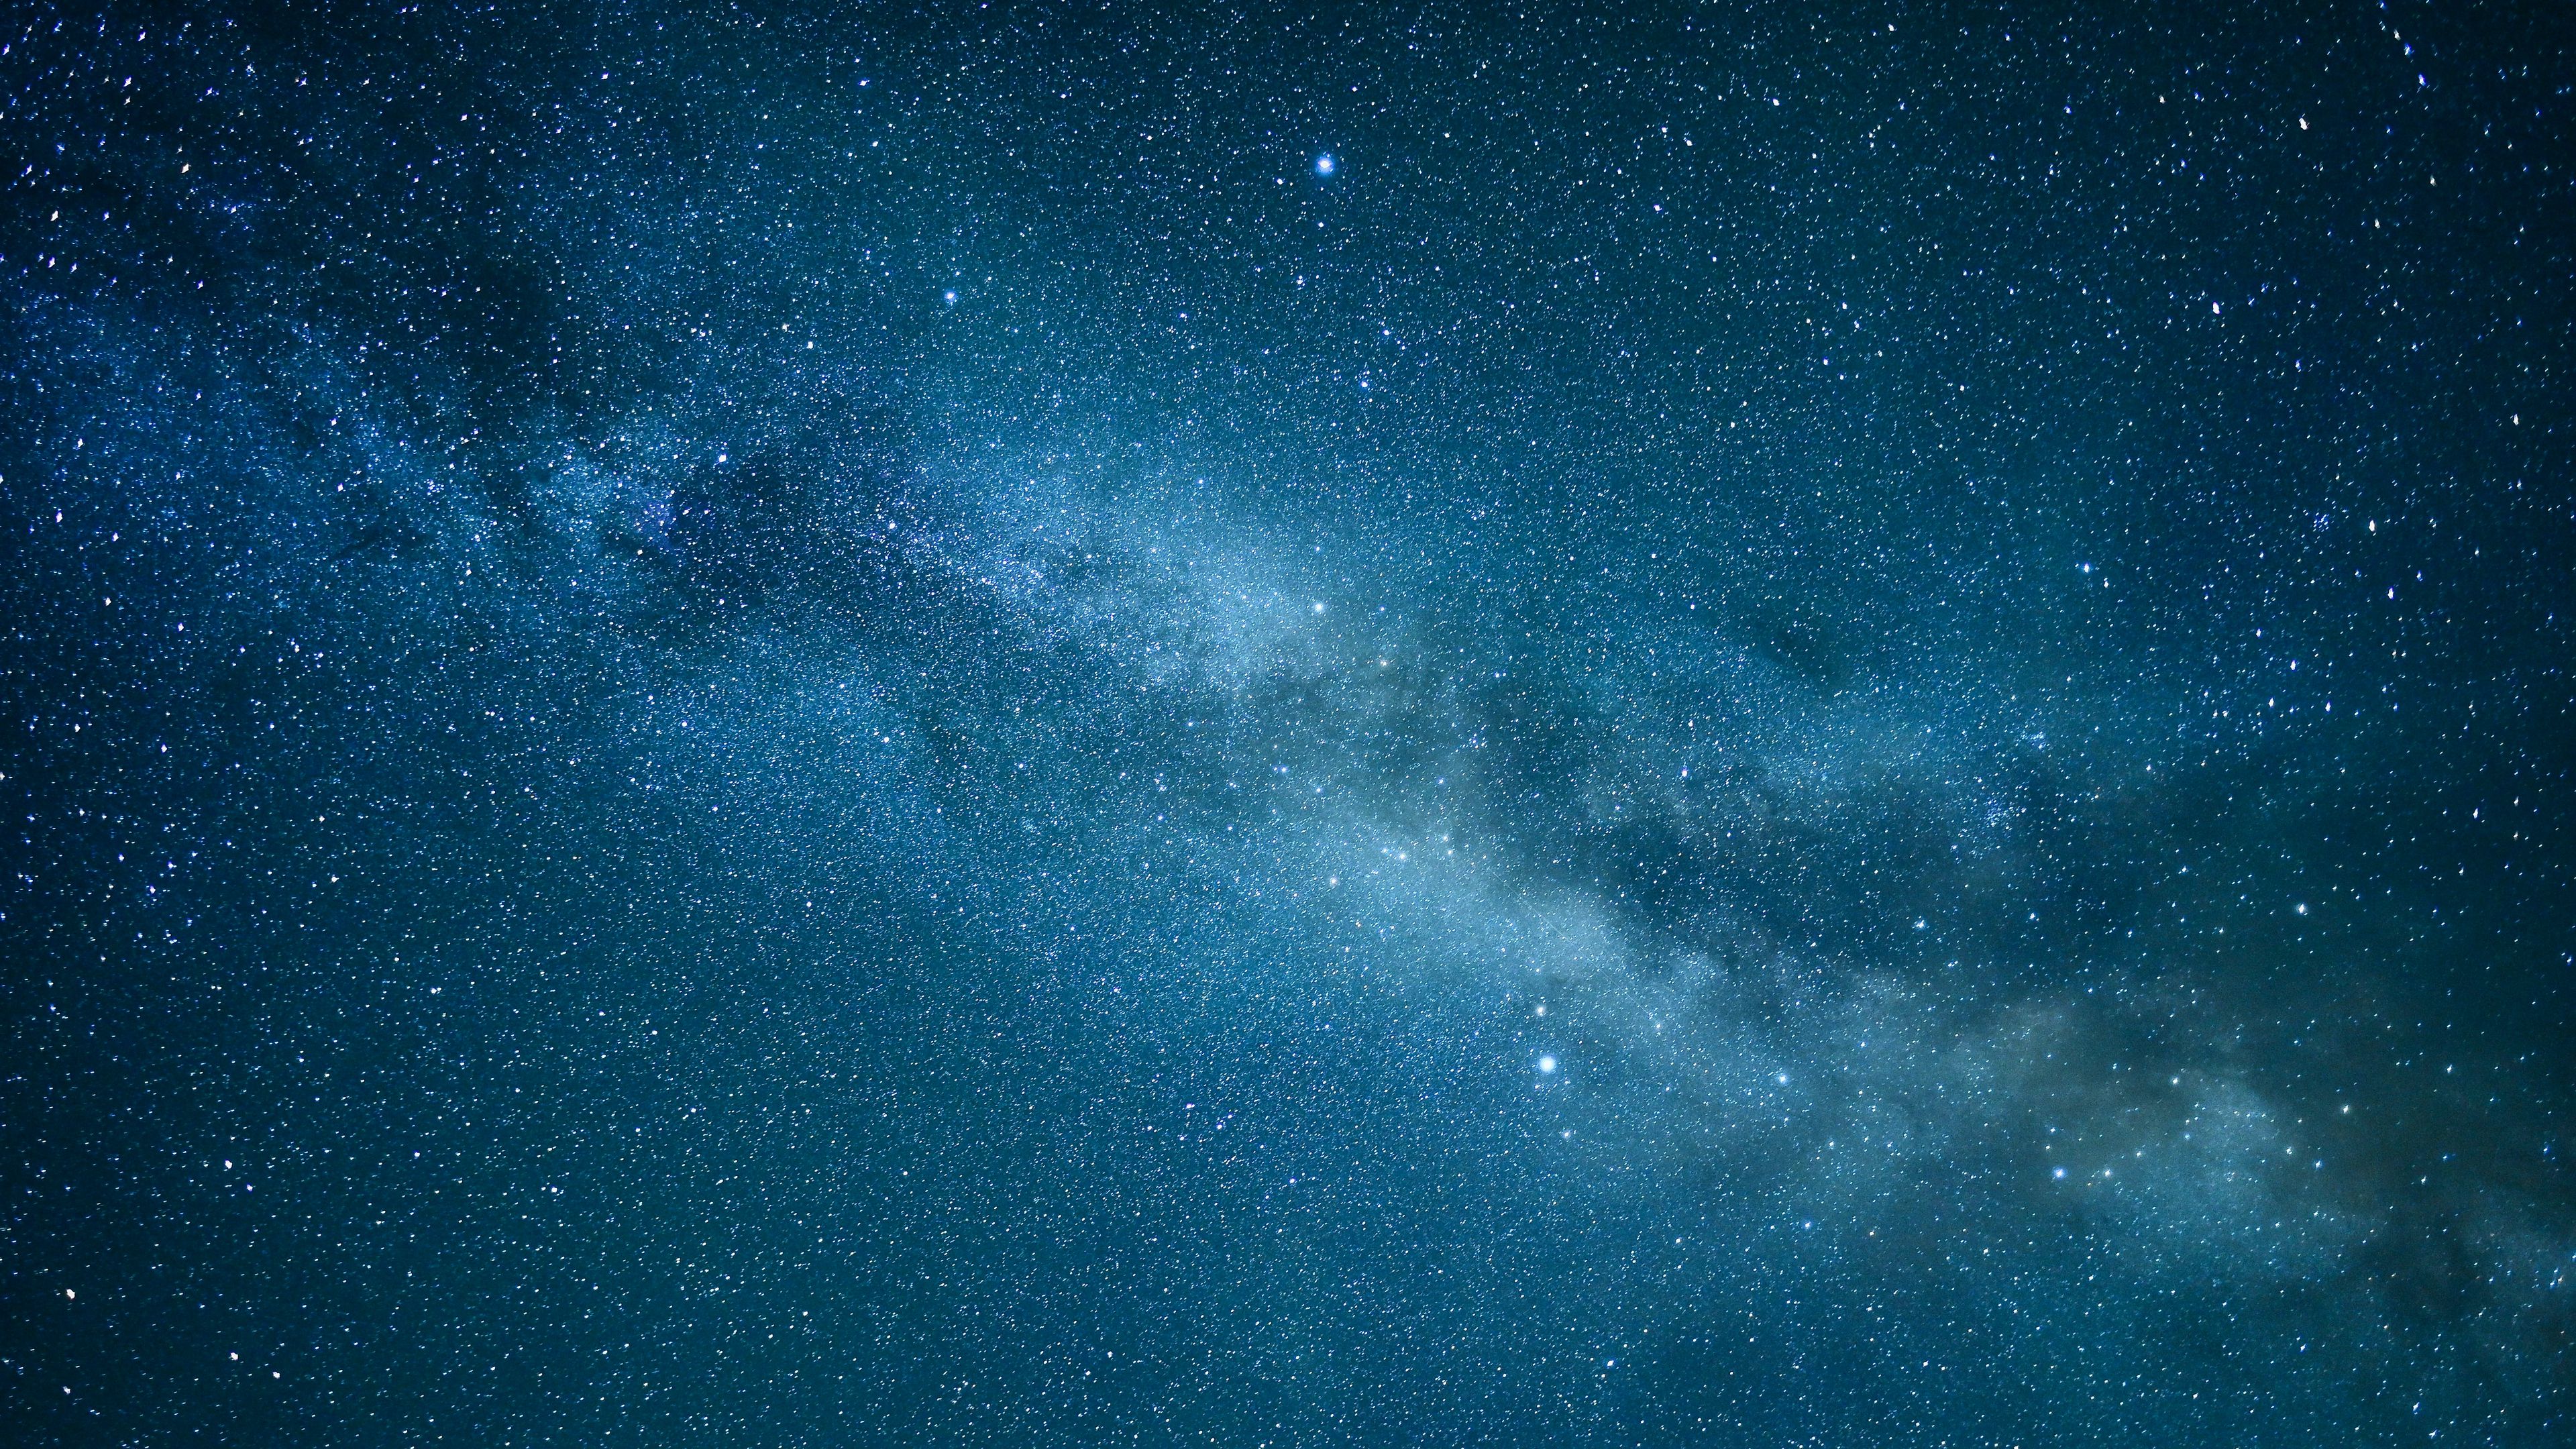 Tải hình nền 3840x2160 bầu trời đầy sao, tinh vân, ngôi sao, màu xanh...: Tận hưởng không gian của vũ trụ trên màn hình thiết bị của bạn với loạt hình nền độ phân giải 3840x